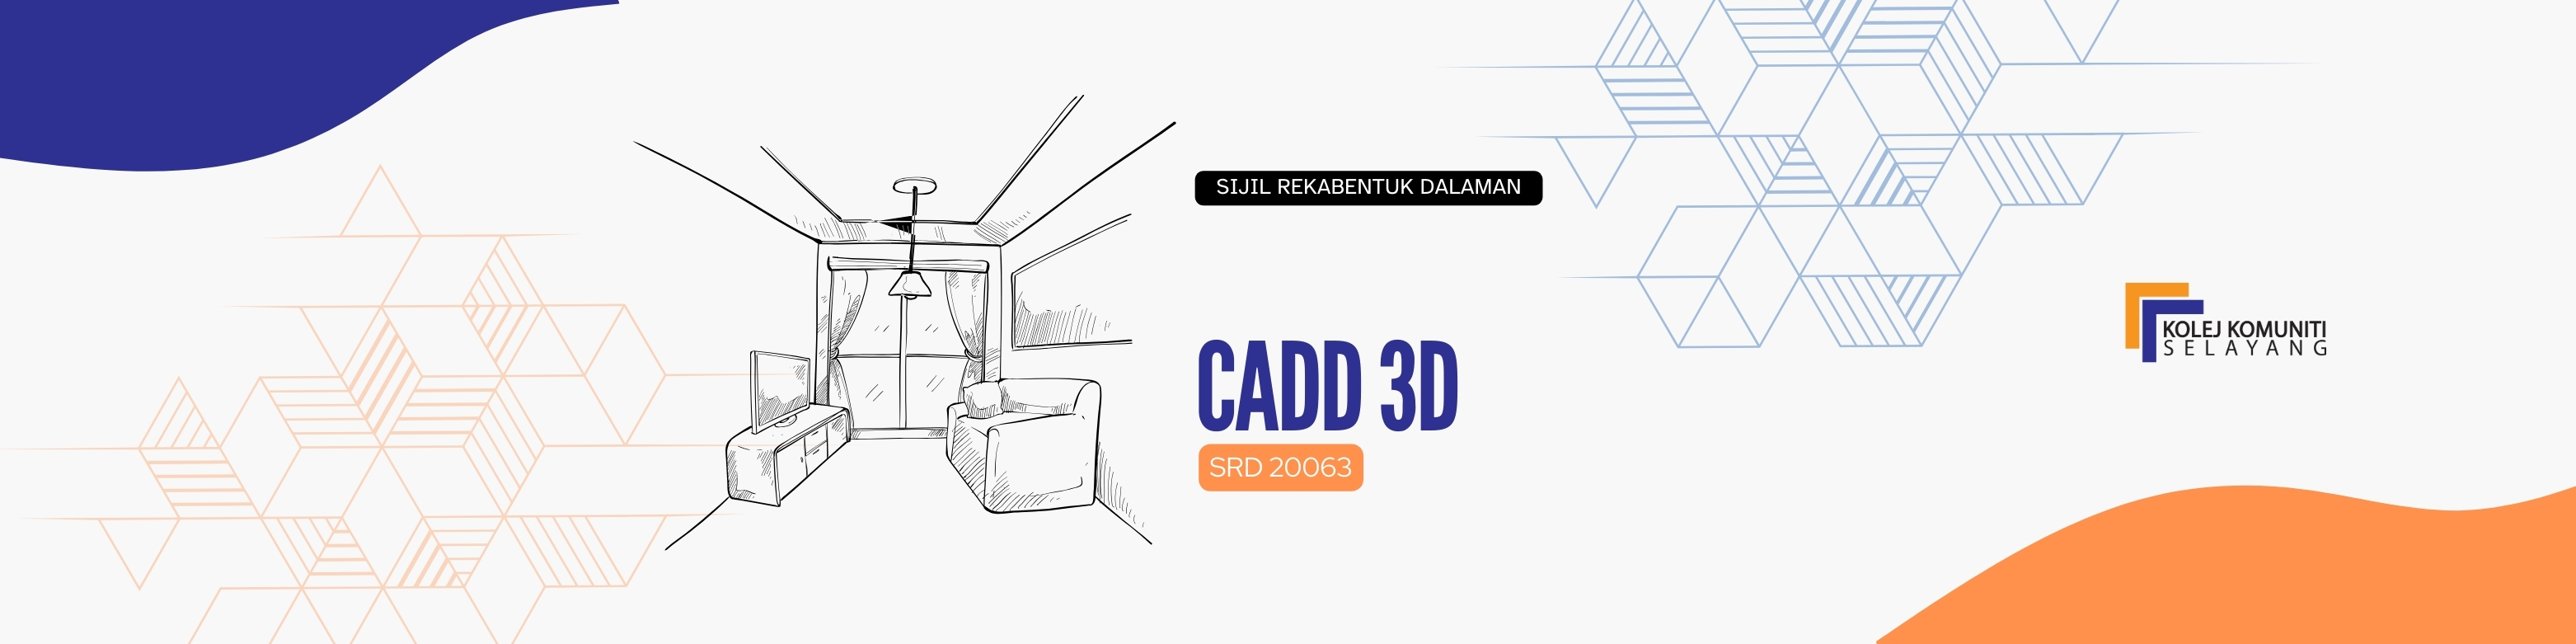 SRD20063 - CADD 3D